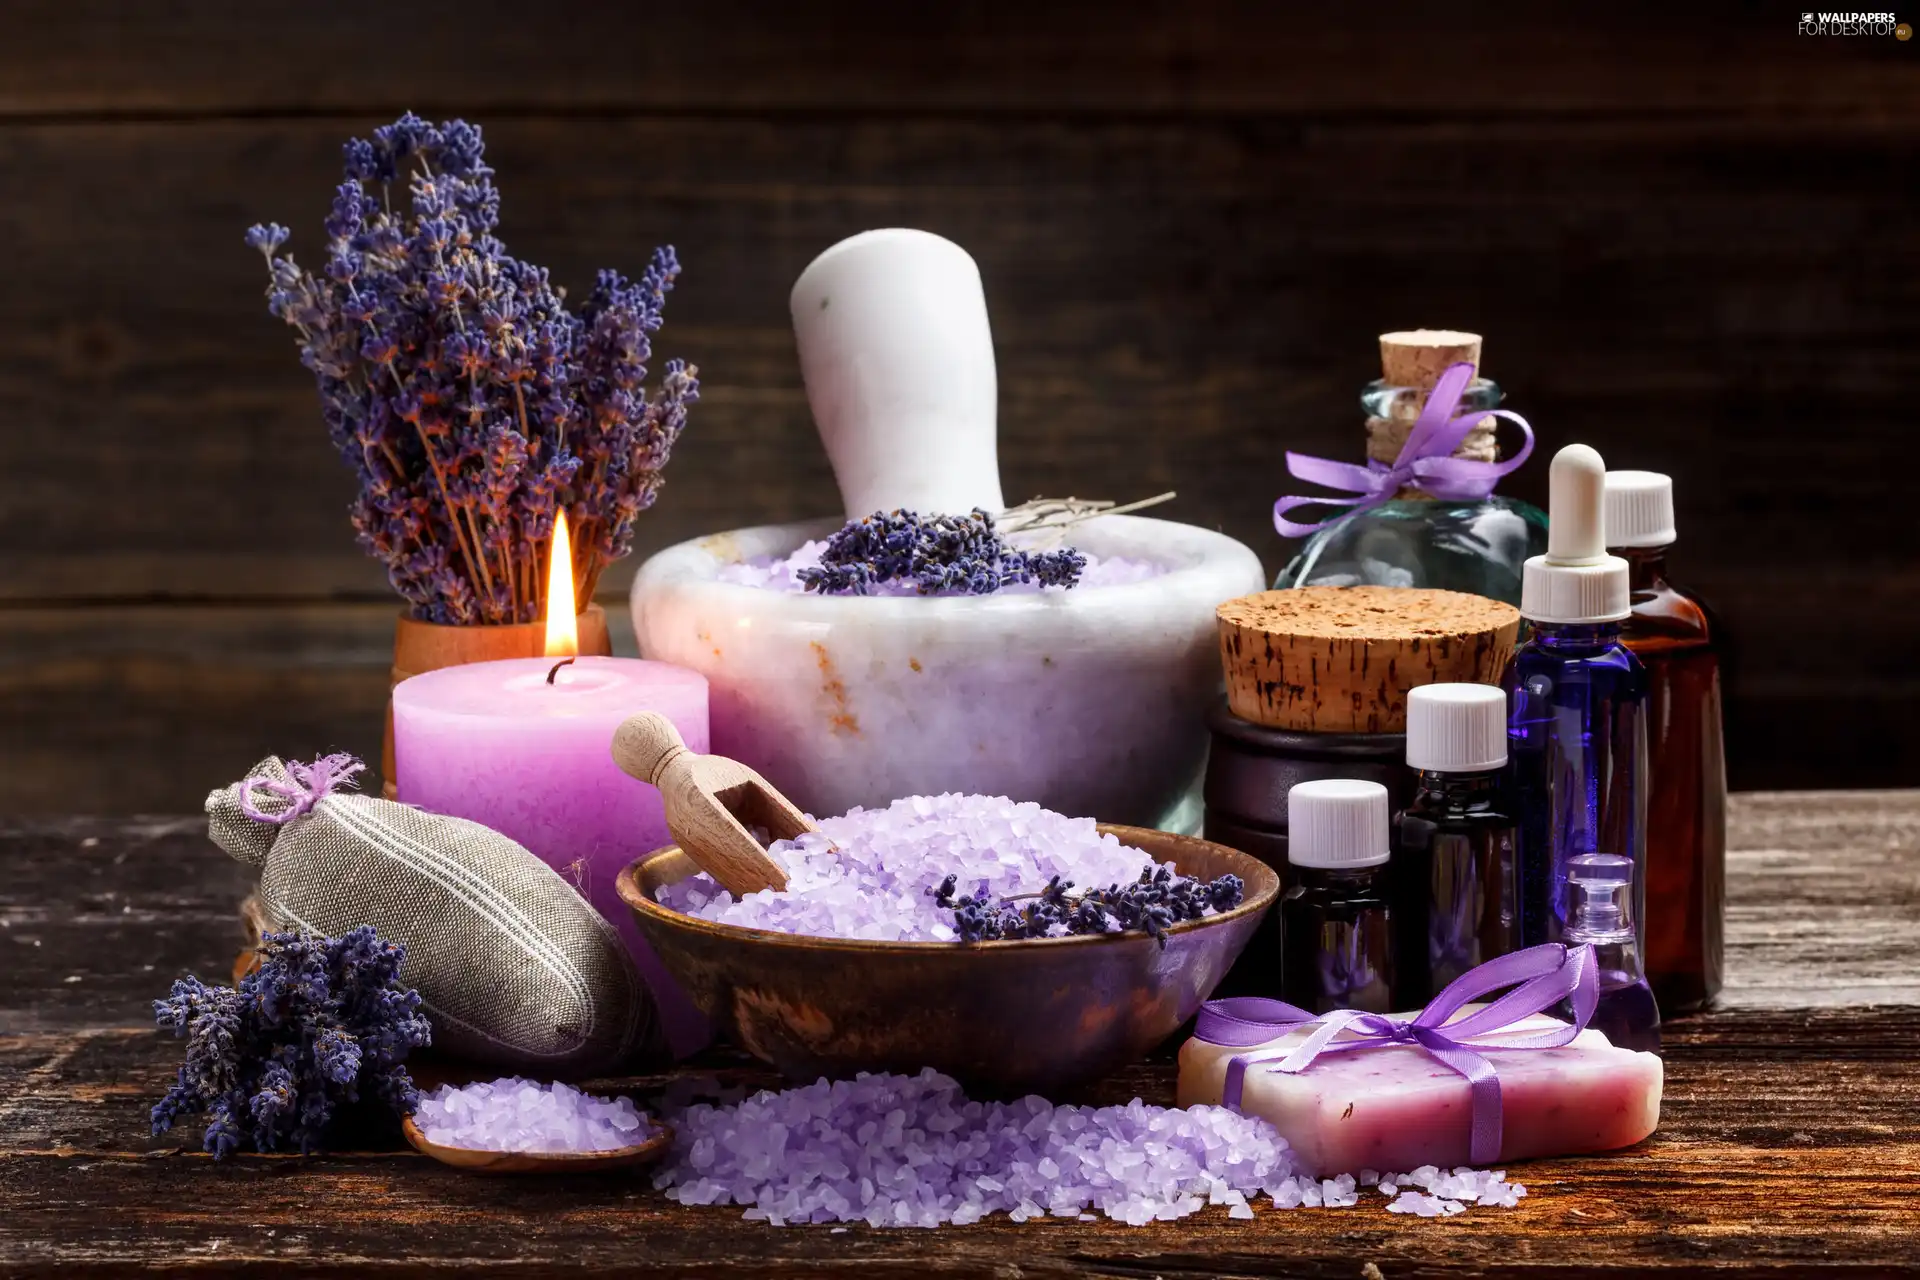 lavender, Bottles, salt, Candle, Spa, mortar, Soap